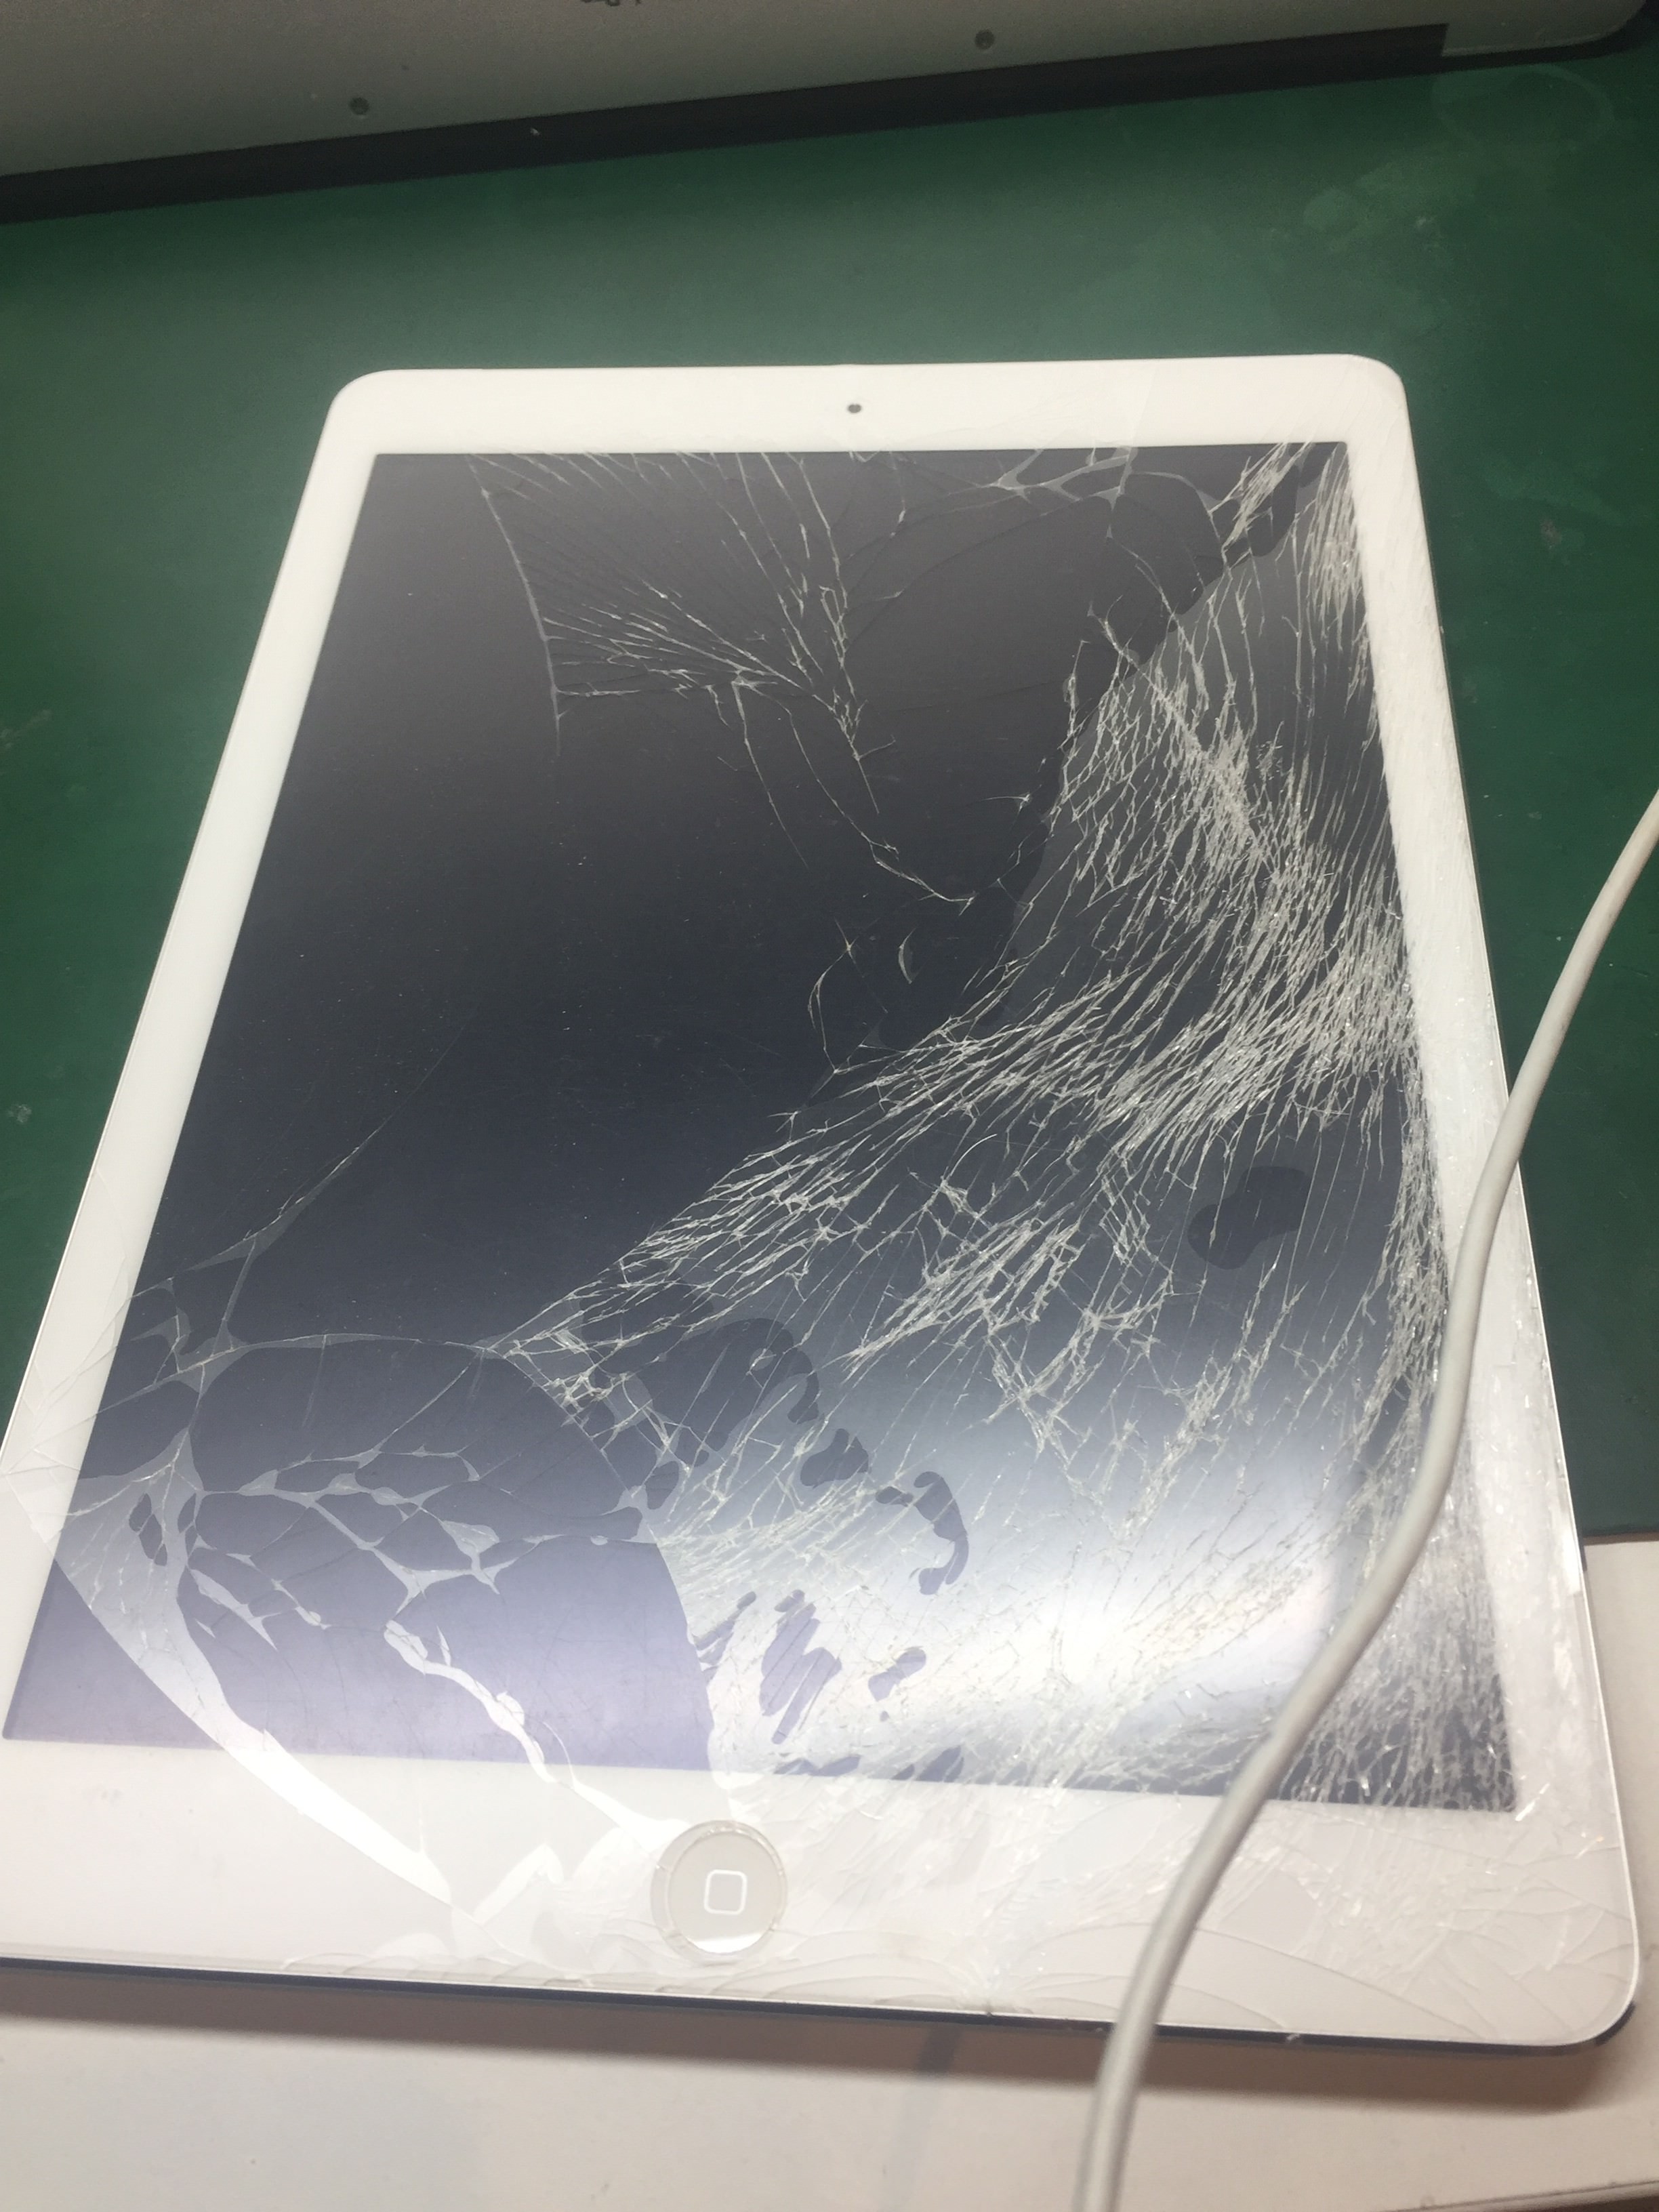 iPadを踏んでしまった・・・画面がヒビだらけに！iPadAirガラス修理 ...